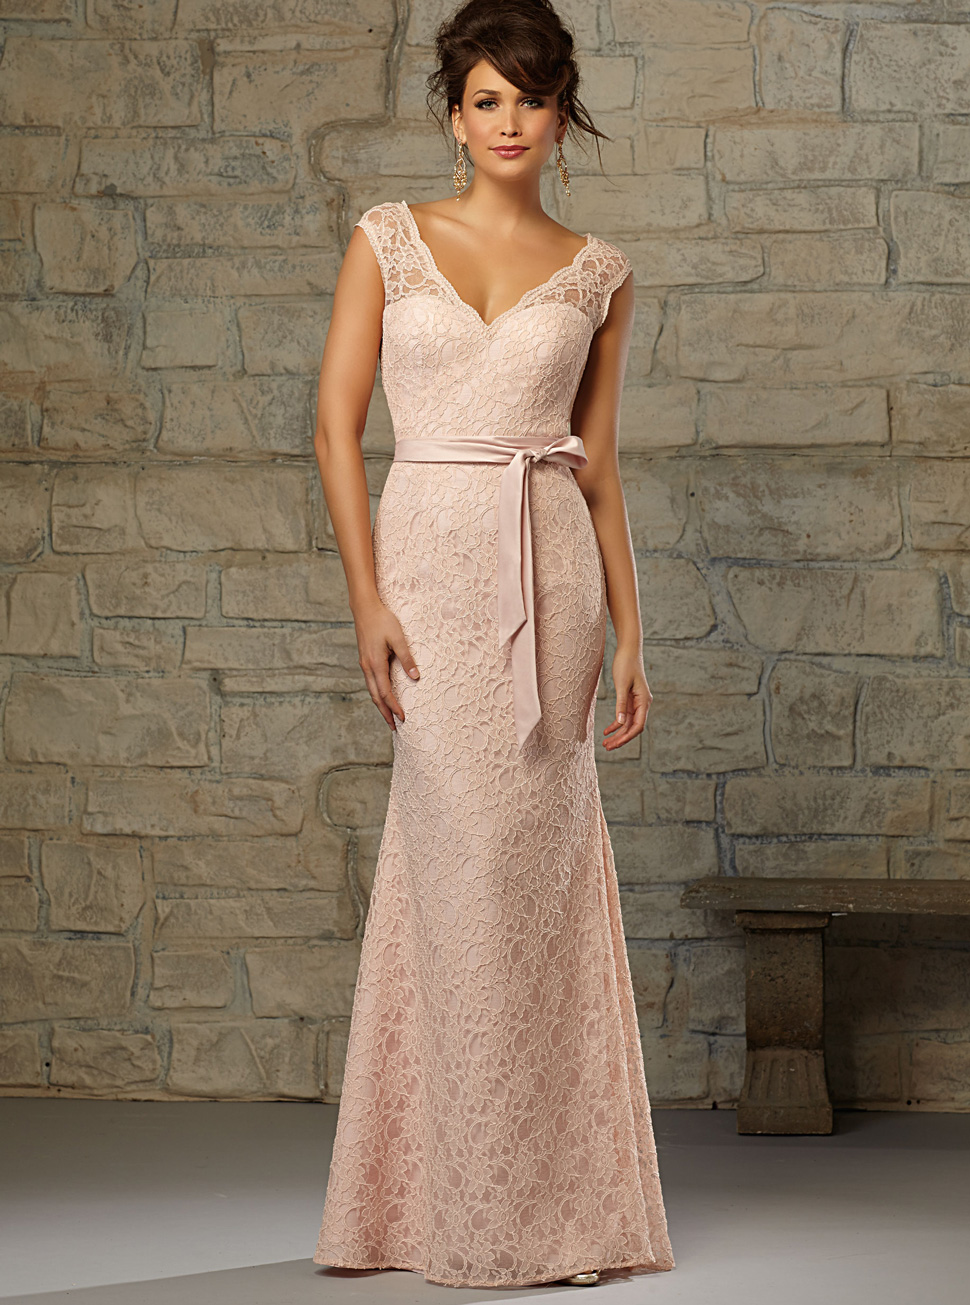 欧式粉红色蕾丝包臀裙批发新款时尚长款礼服女装LIFU6074